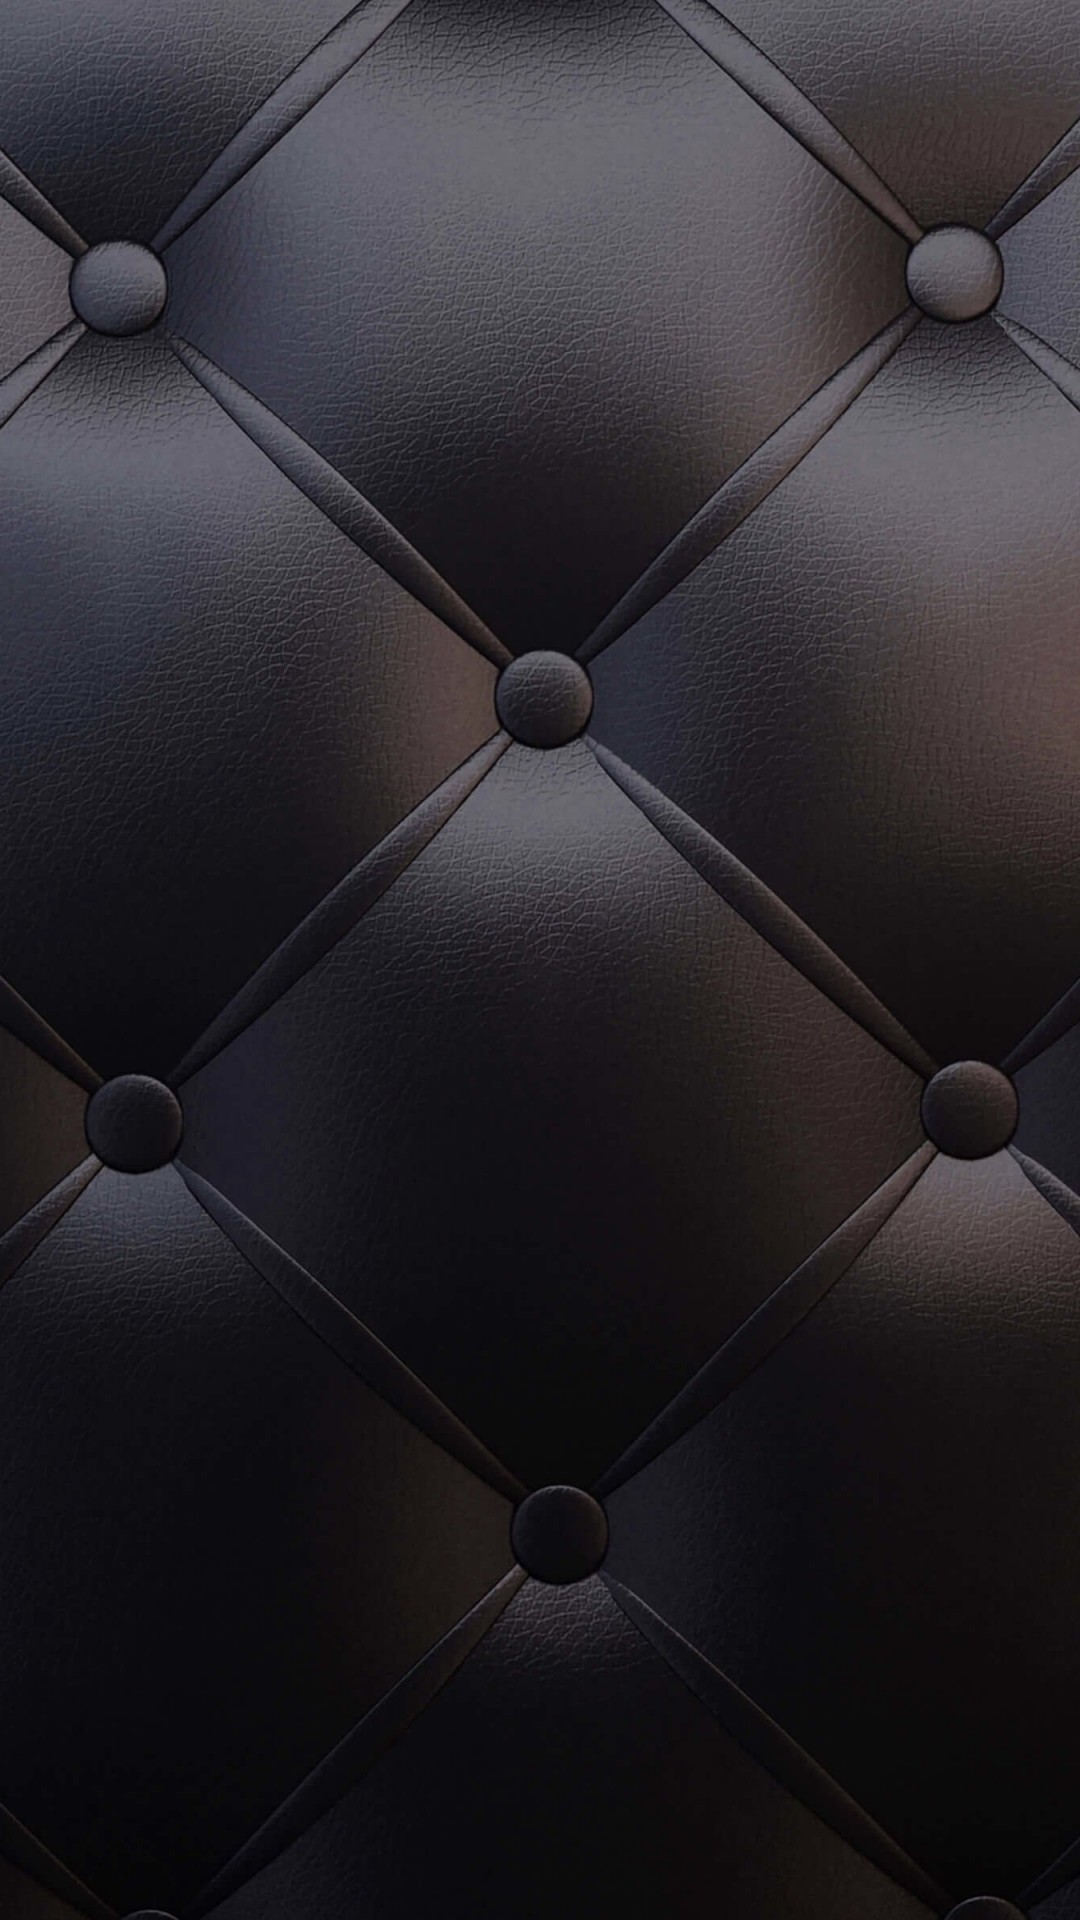 Black Leather Vintage Sofa Wallpaper for LG G2